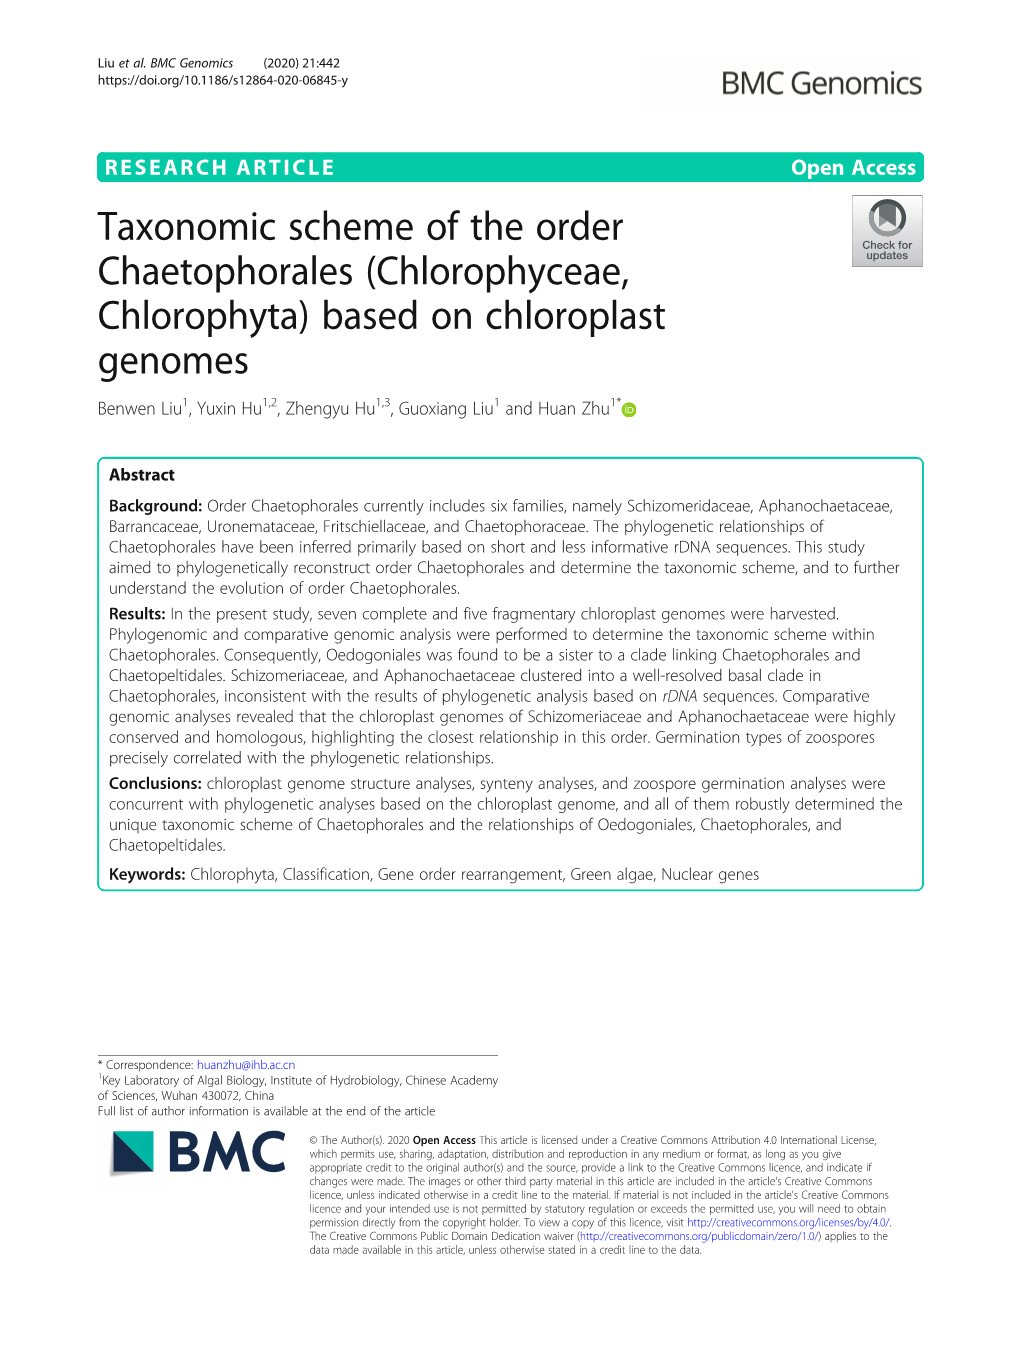 (Chlorophyceae, Chlorophyta) Based on Chloroplast Genomes Benwen Liu1, Yuxin Hu1,2, Zhengyu Hu1,3, Guoxiang Liu1 and Huan Zhu1*